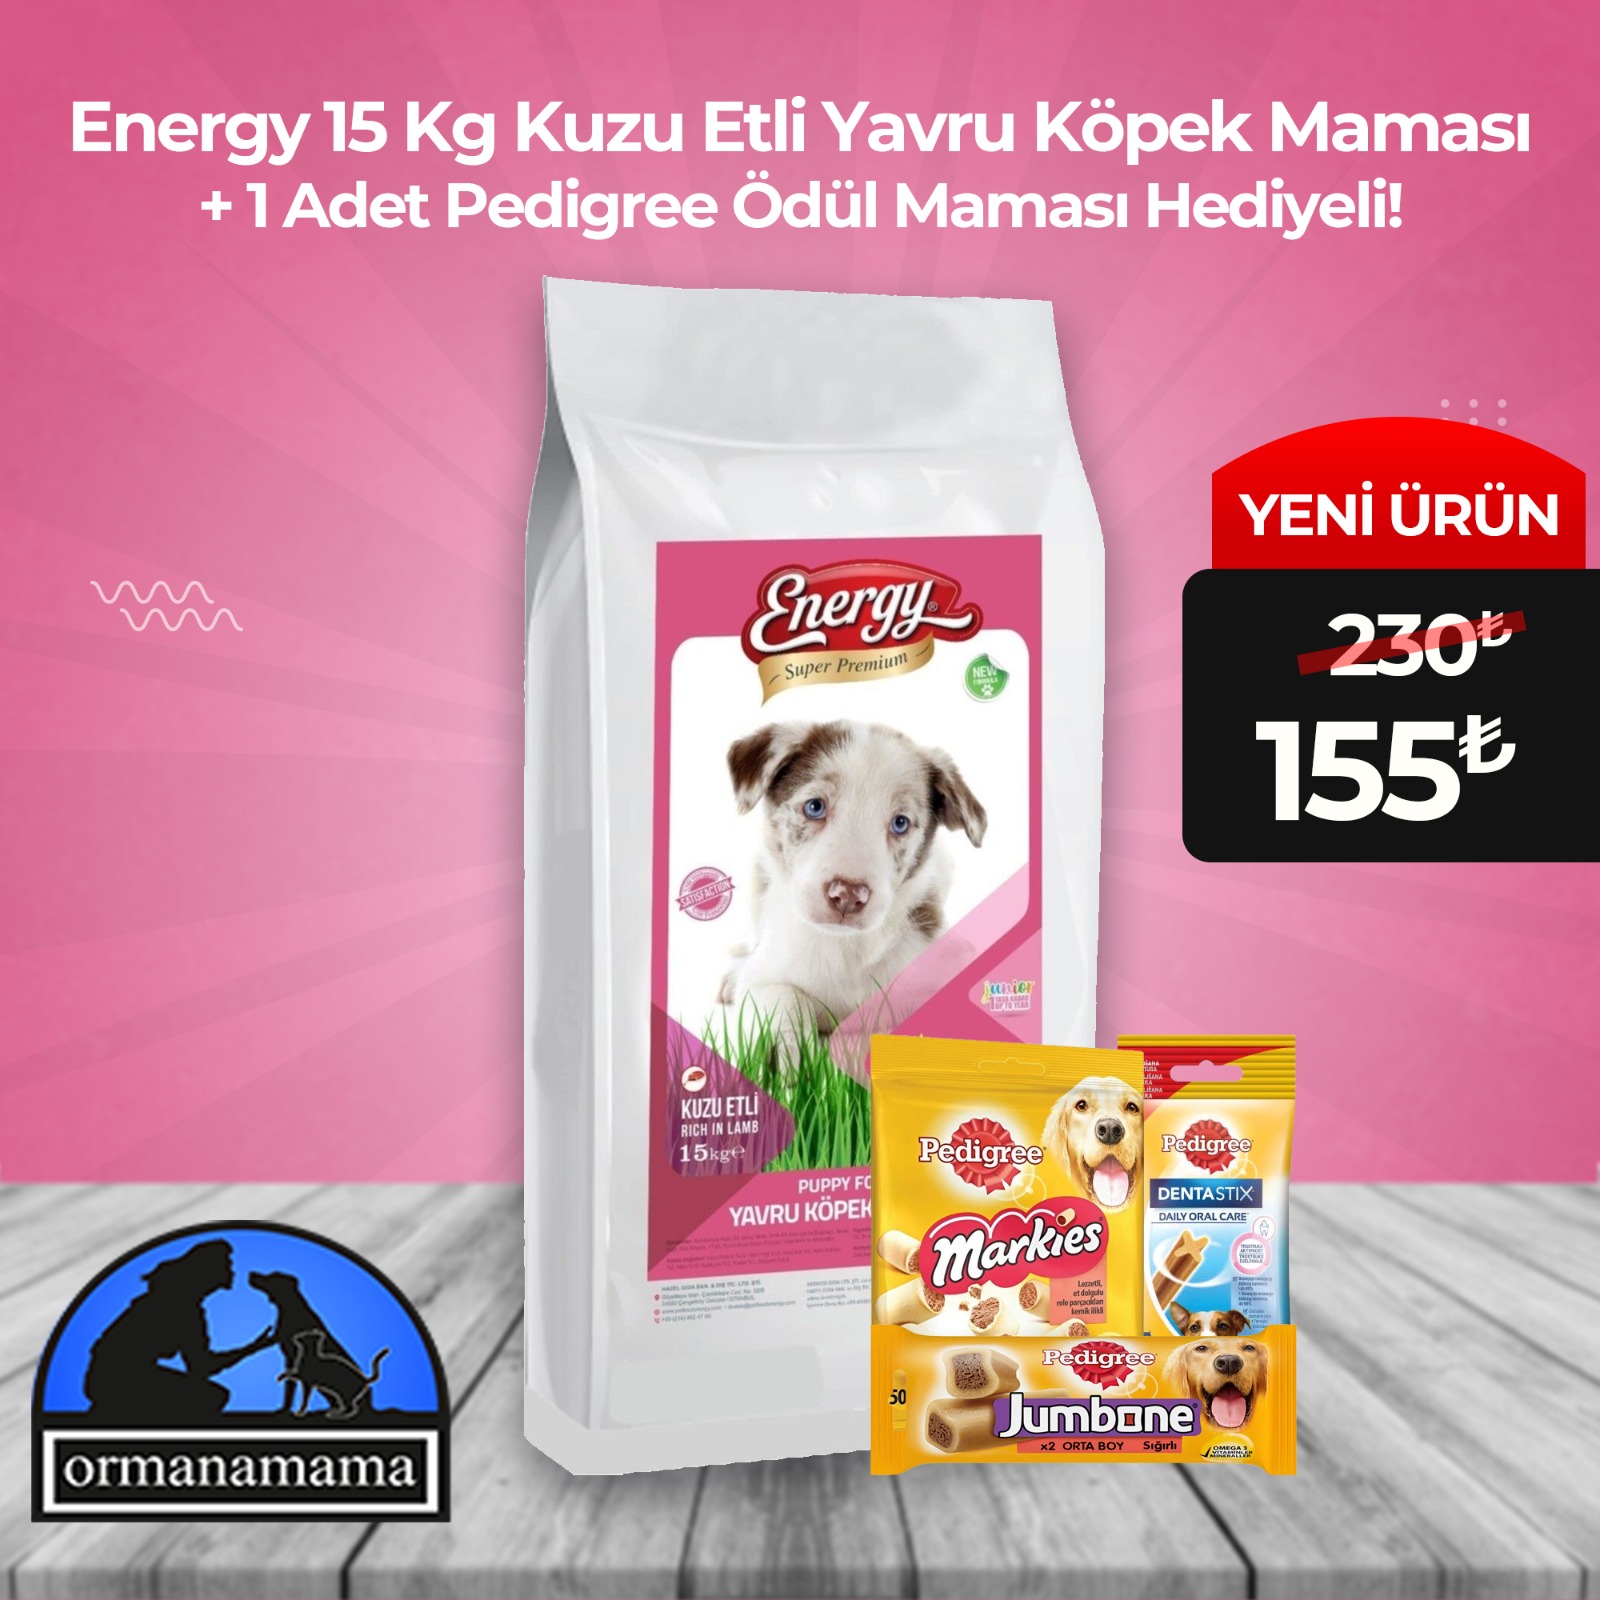 Energy 15 Kg Kuzu Etli Yavru Köpek Maması 1 Adet Pedigree Ödül Maması Hediyeli!